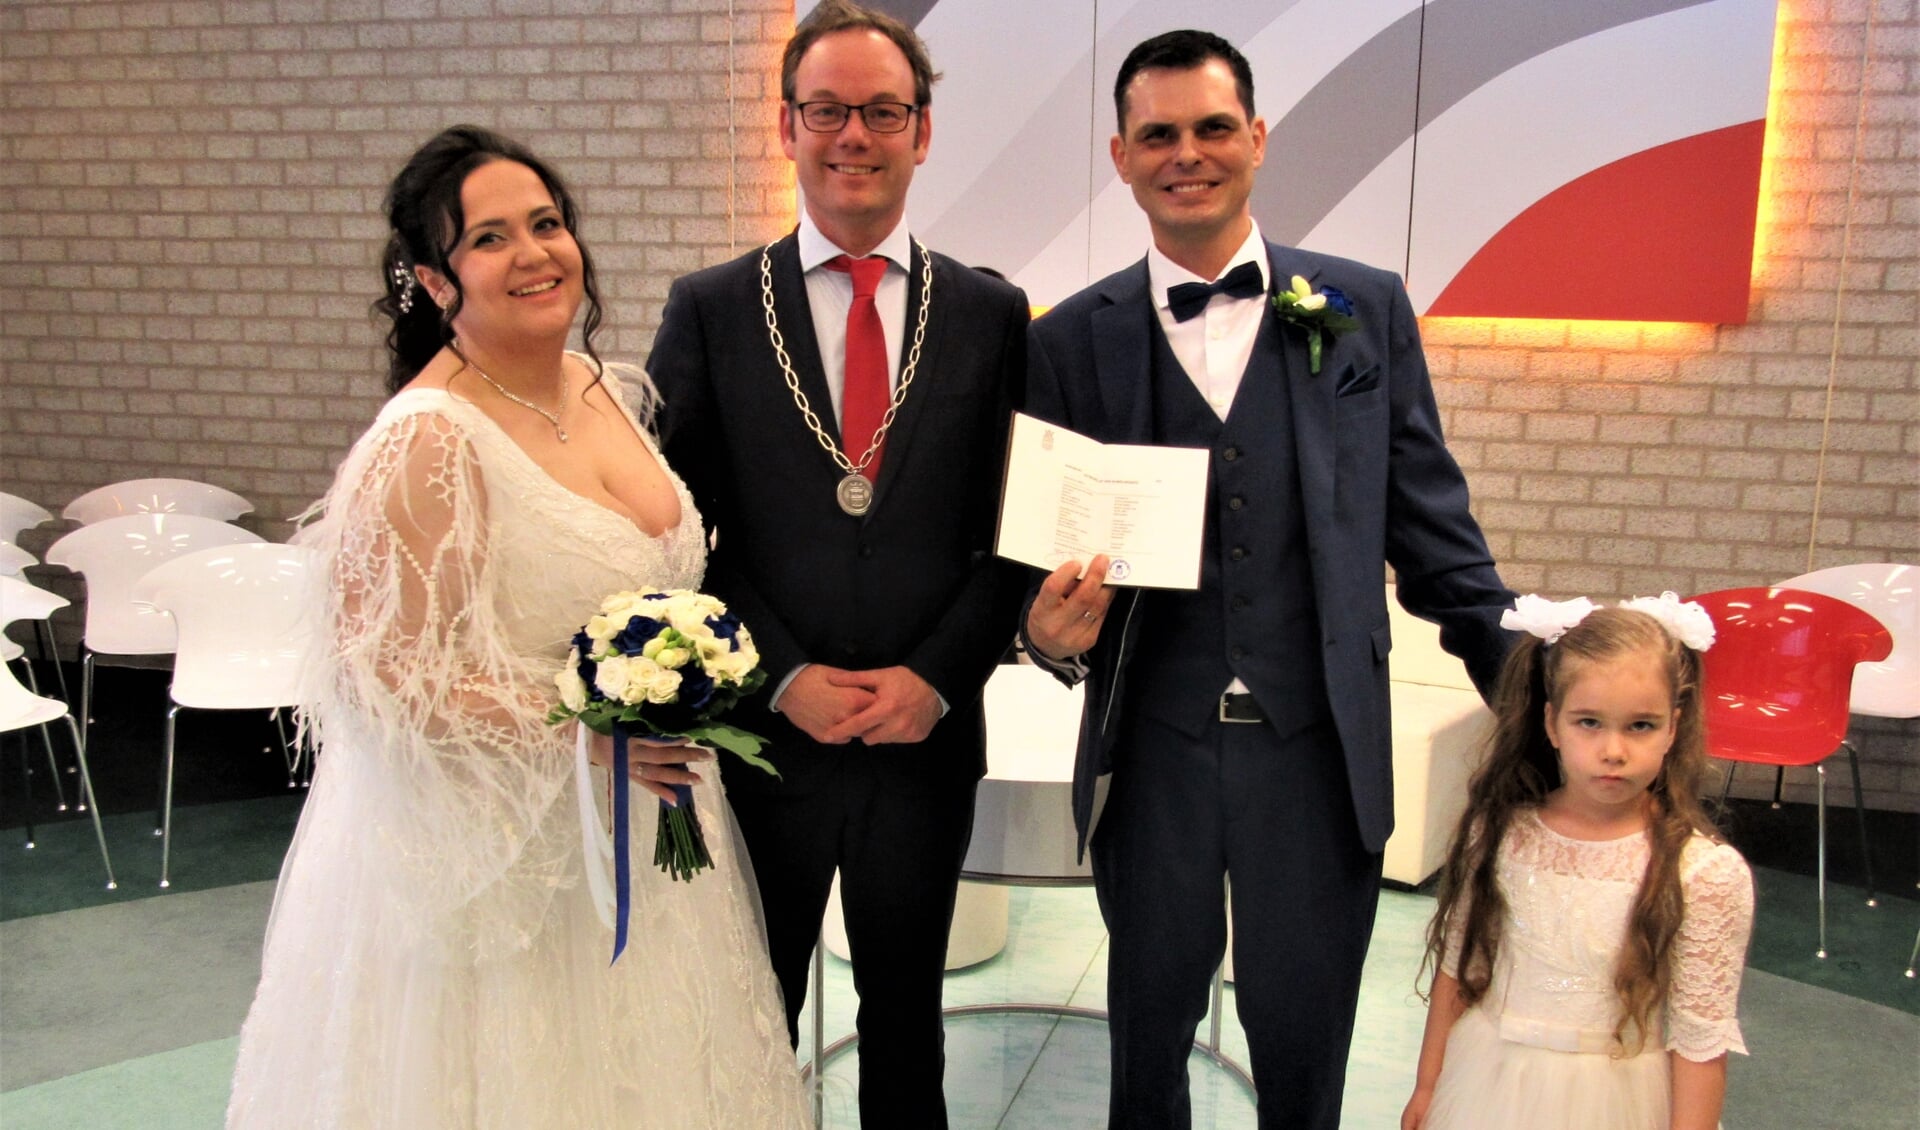 Het gelukkige bruidspaar samen met hun bruidsmeisje en locoburgemeester Sjoerd Kuiper.